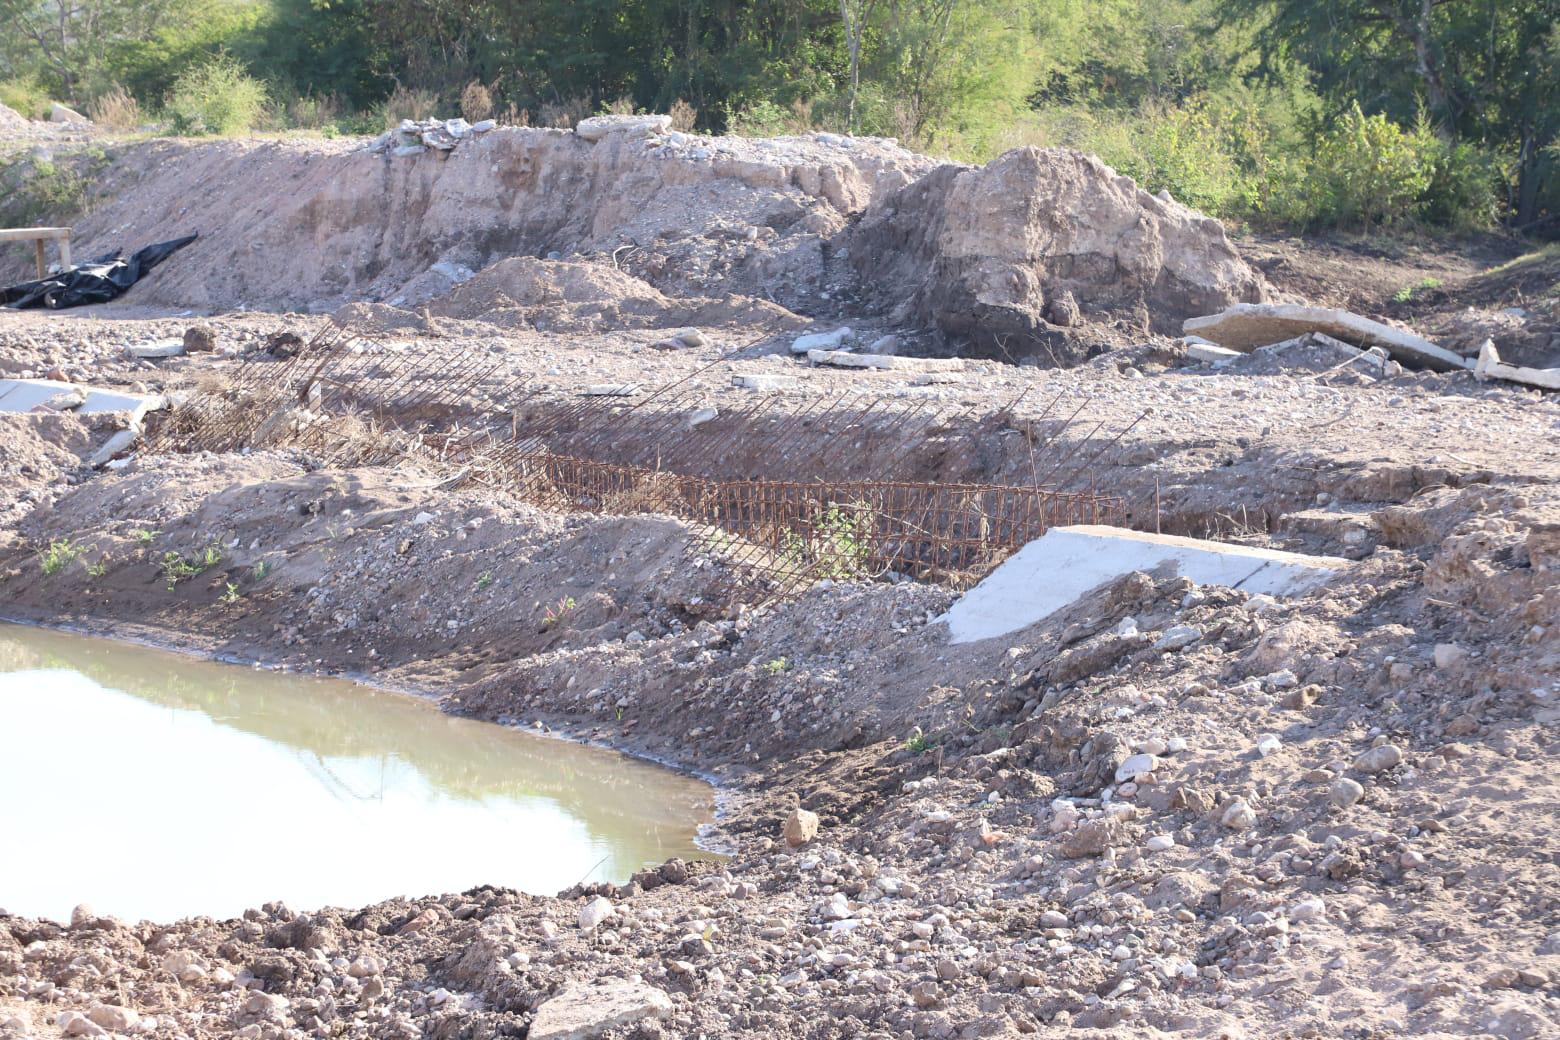 $!Advierten severas deficiencias en el canal de riego de El Roble, en Mazatlán